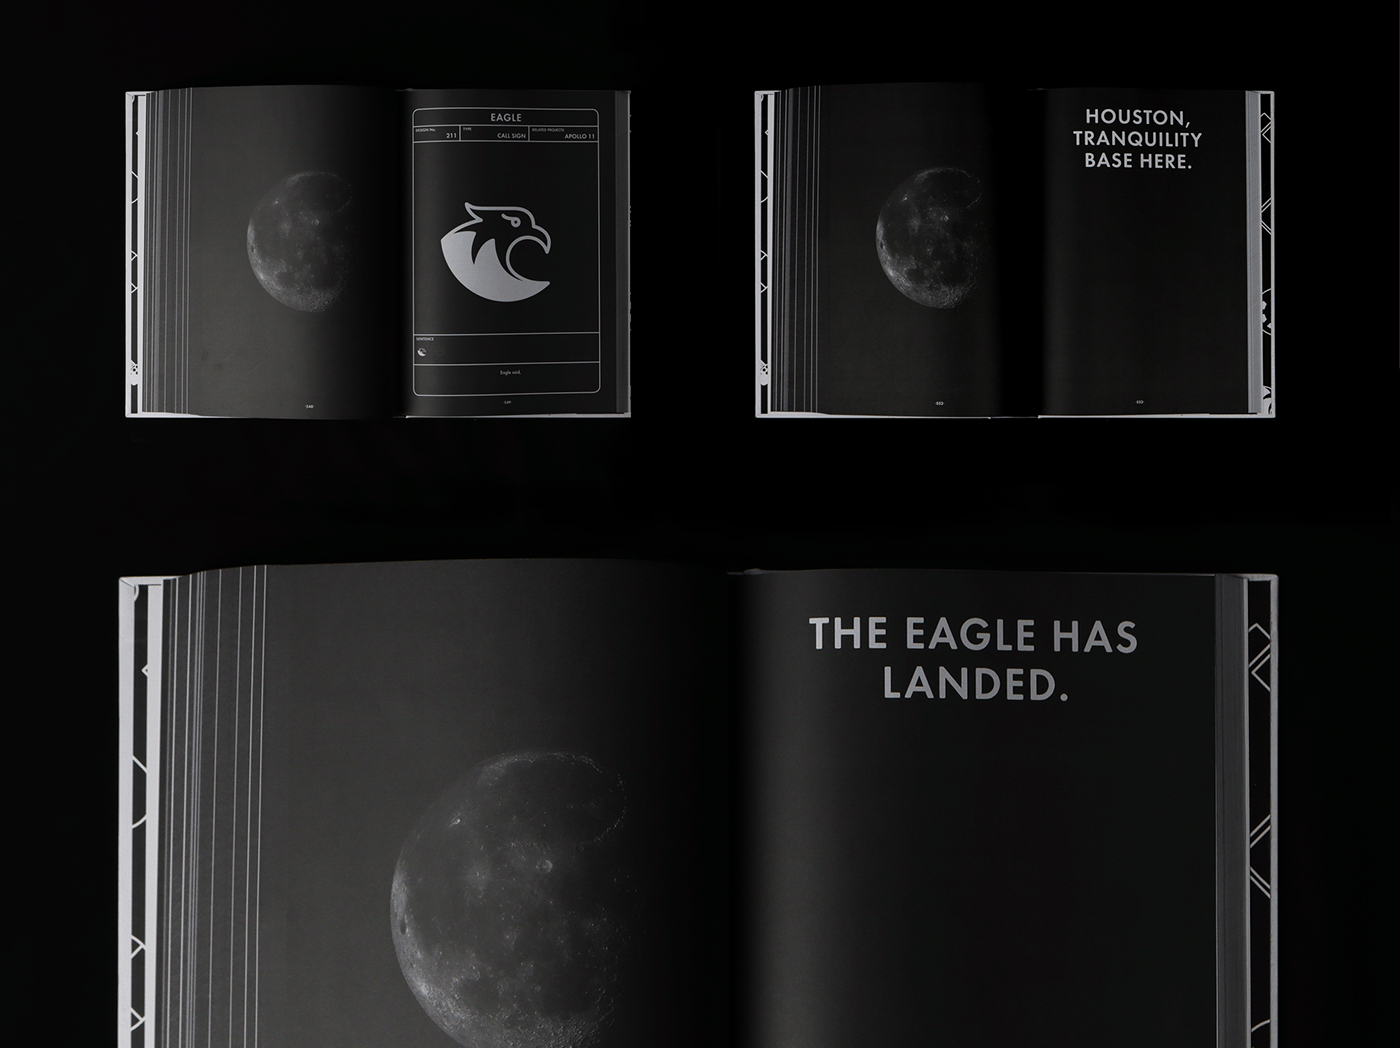 apollo 11 moon Moon landing editorial design  book design Apollo pictogram graphic design  lunar nasa